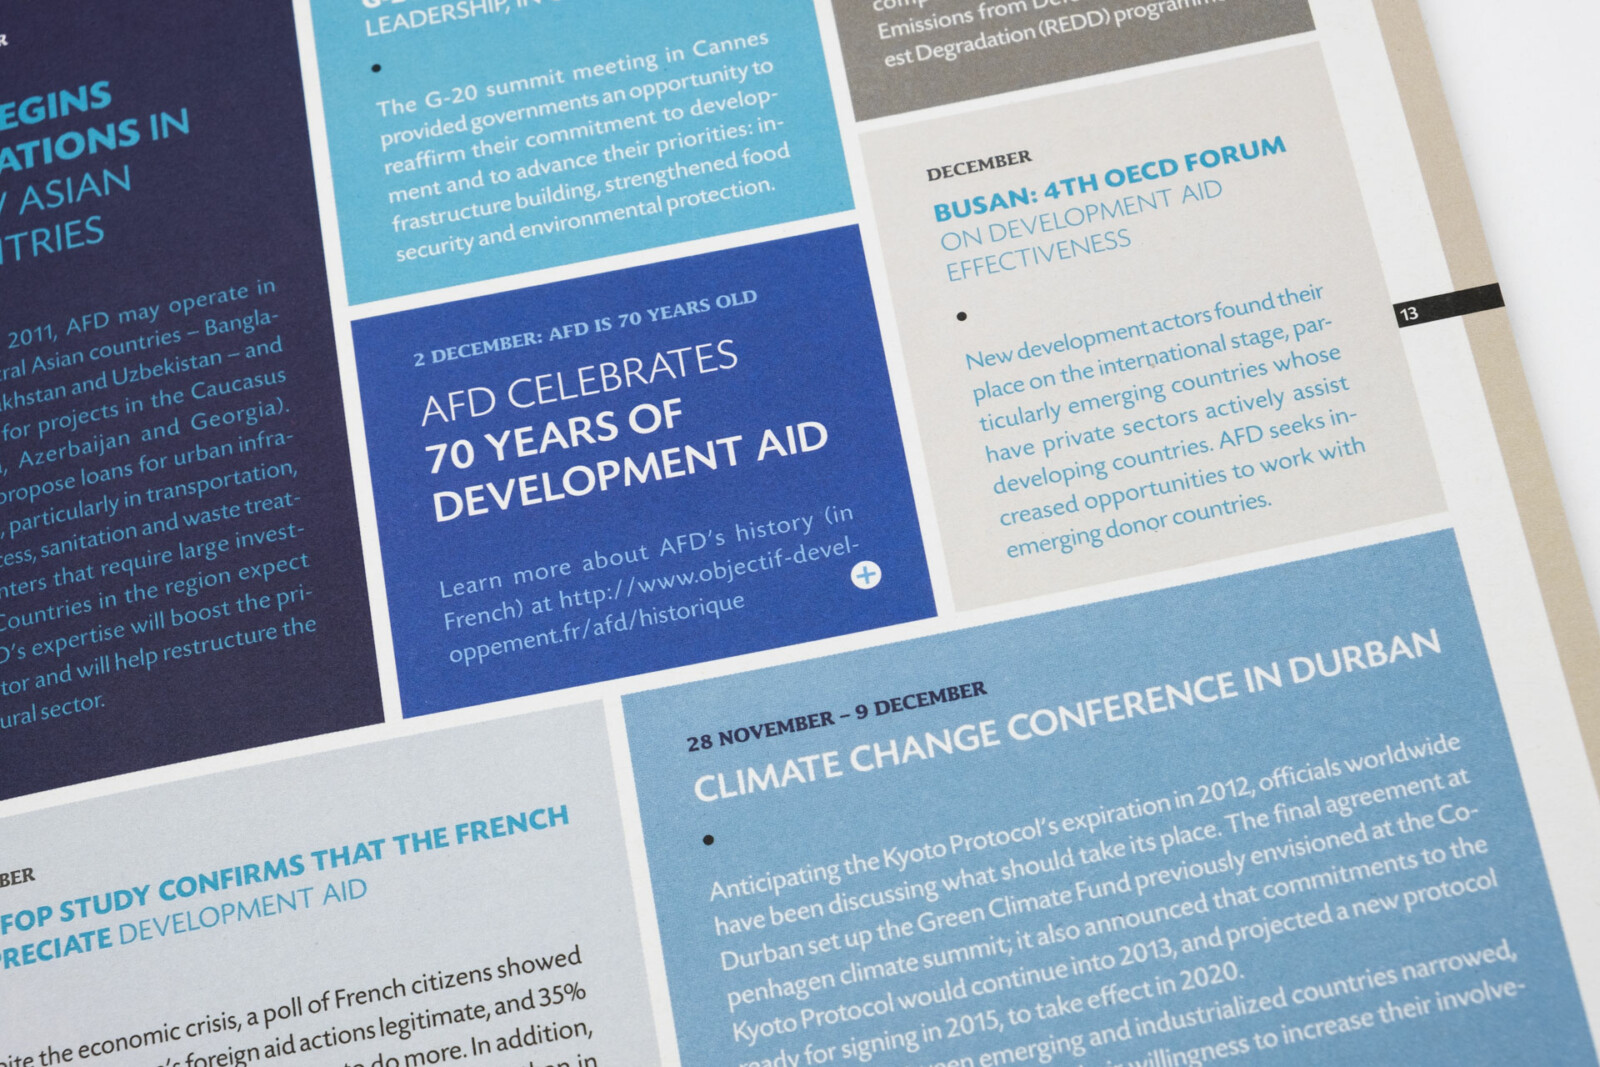 Gros plan sur une page type Agenda, les différents événements sont placés sur des tuiles rectangulaires en camaïeux de bleu, l'édition est en version anglaise.